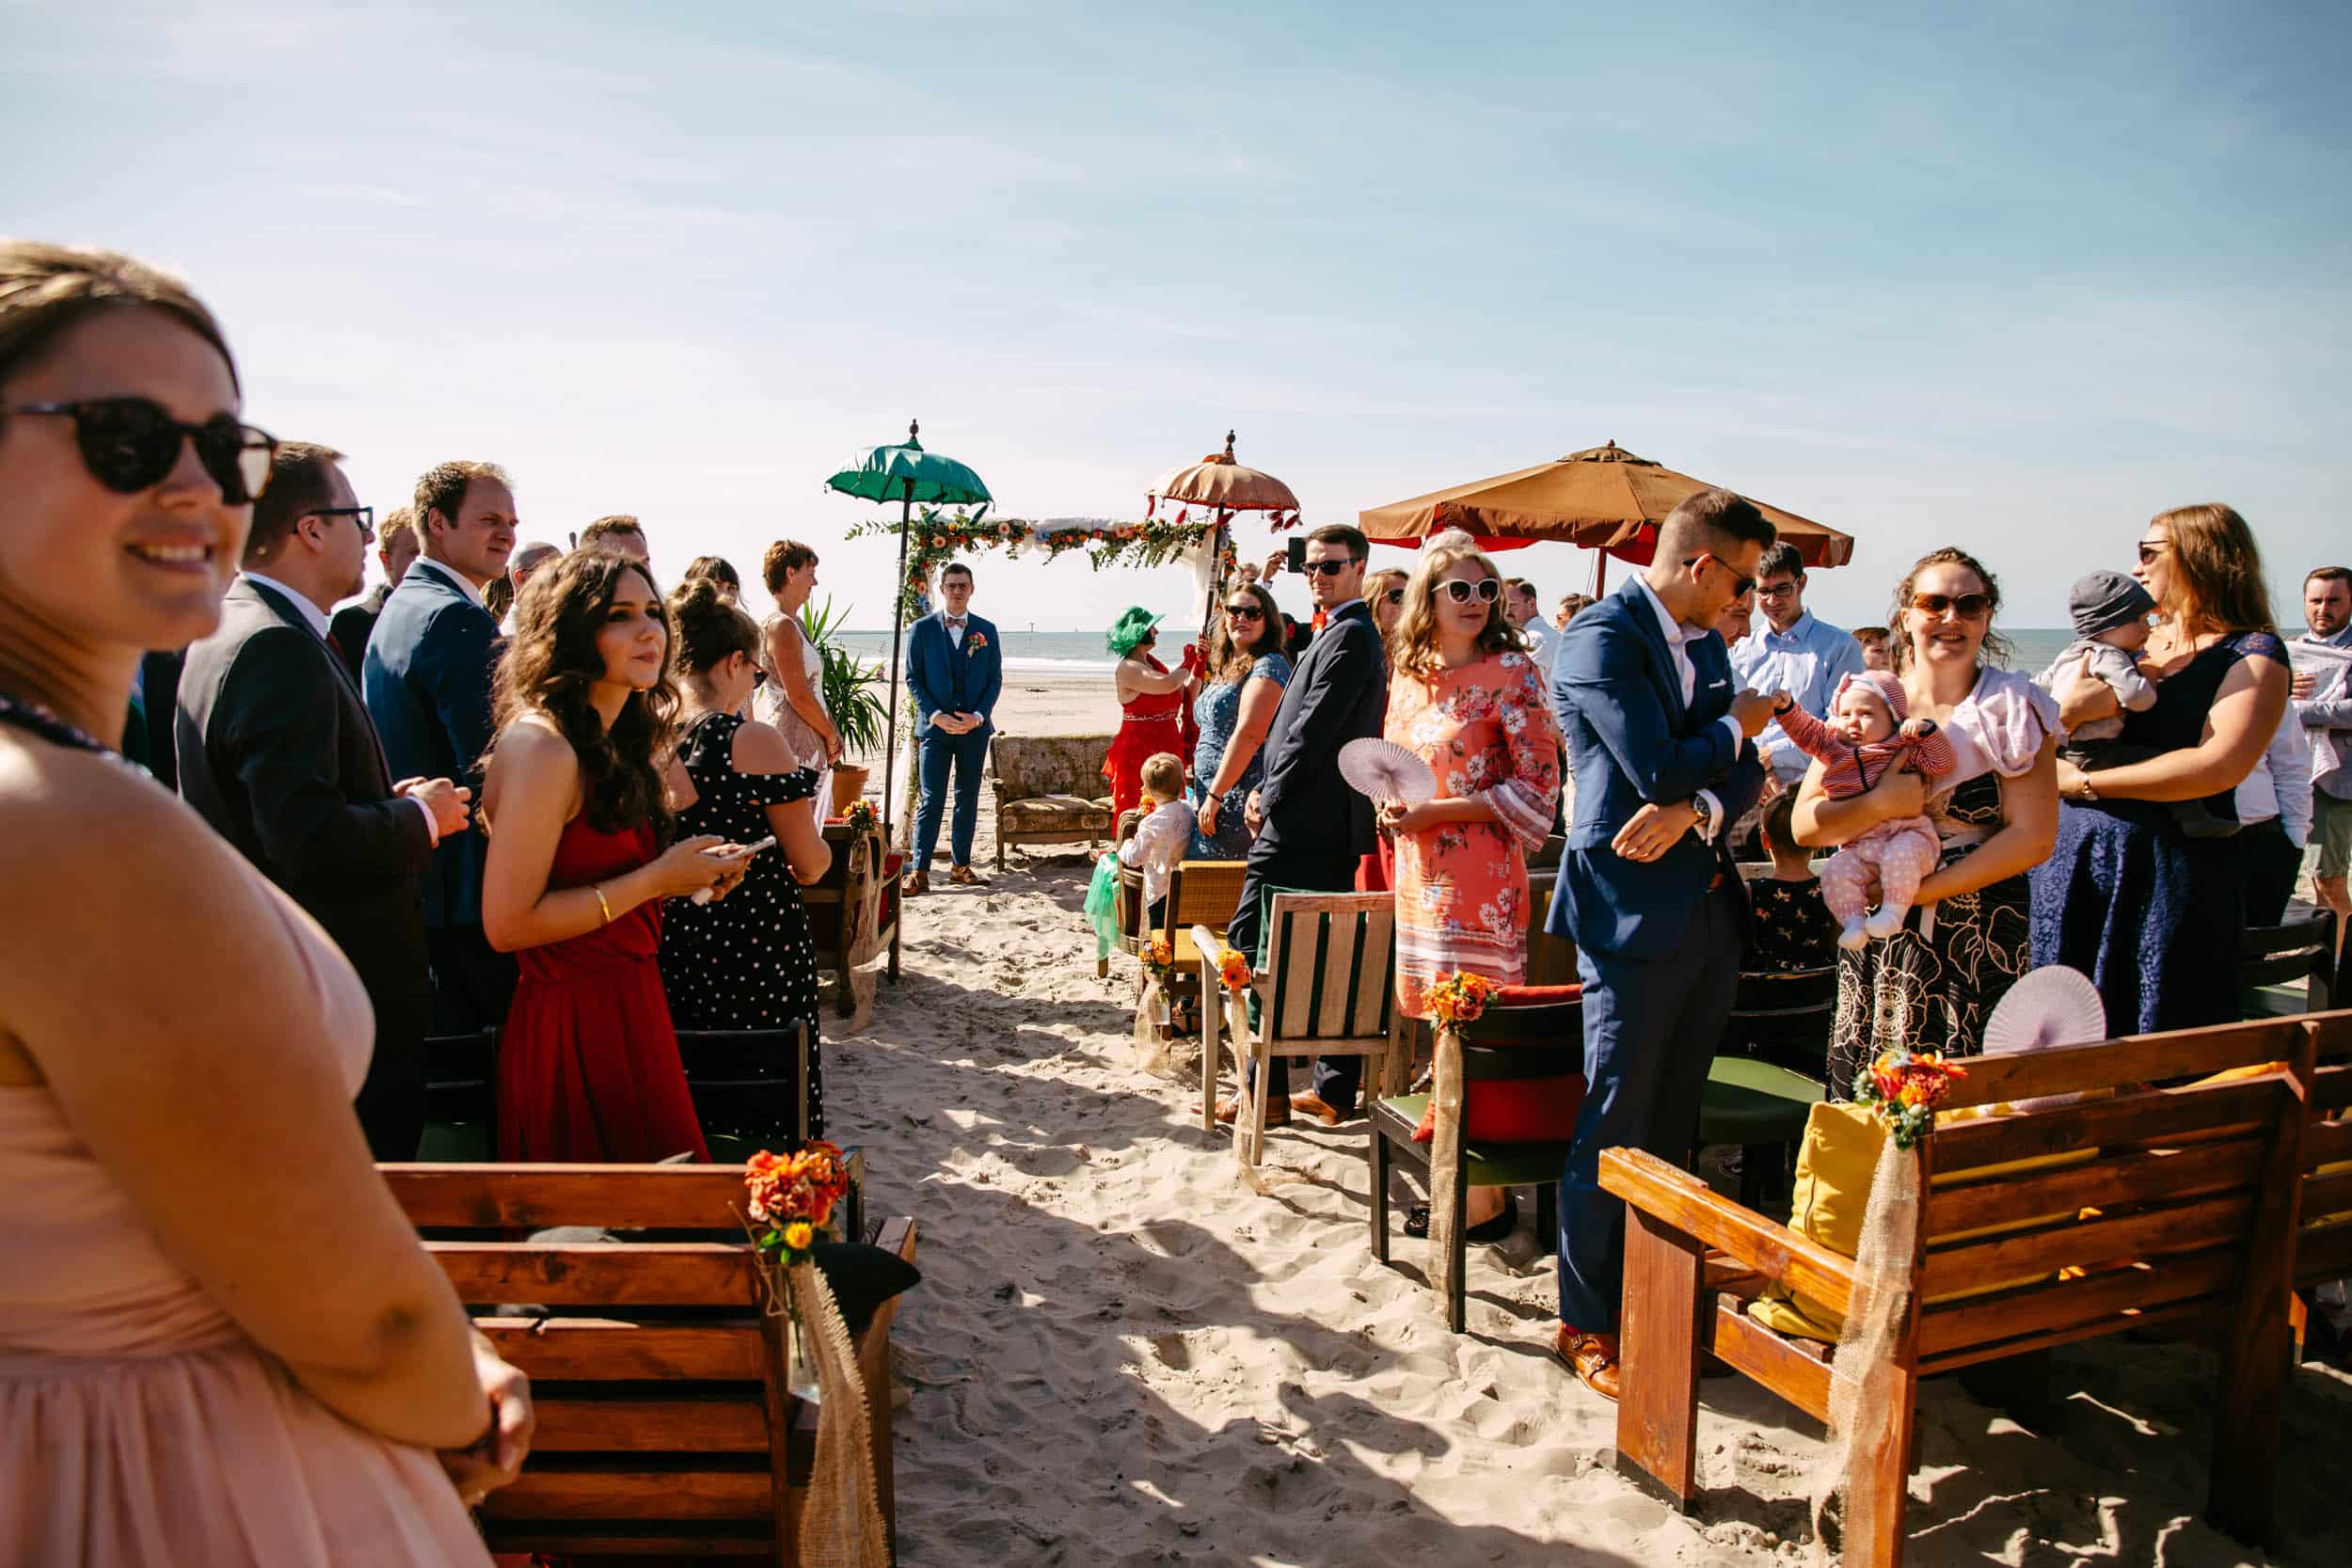 Een strandhuwelijksceremonie waar veel mensen naar kijken.